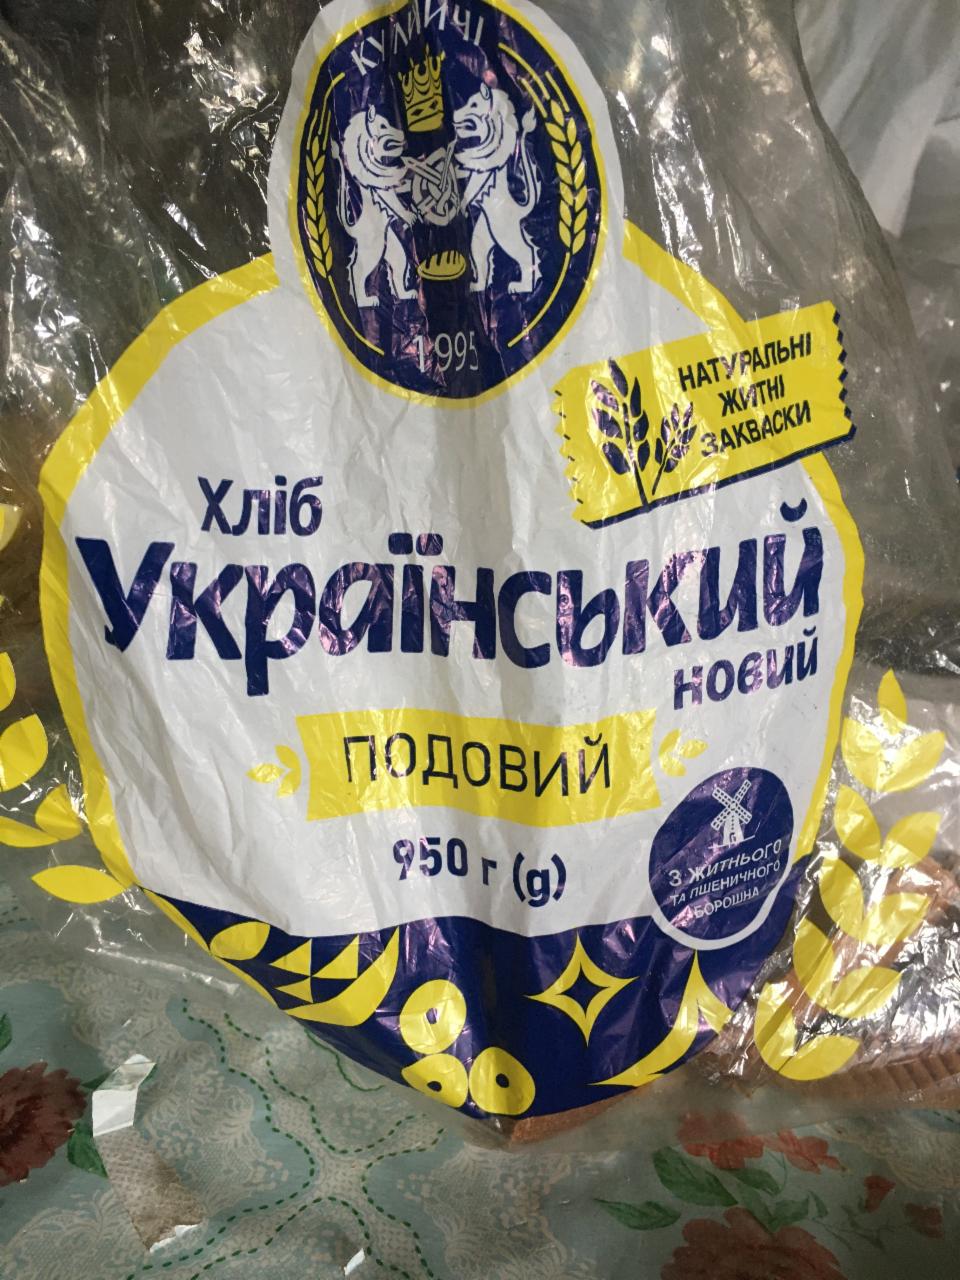 Фото - Хлеб Украинский новый подовый Кулиничи